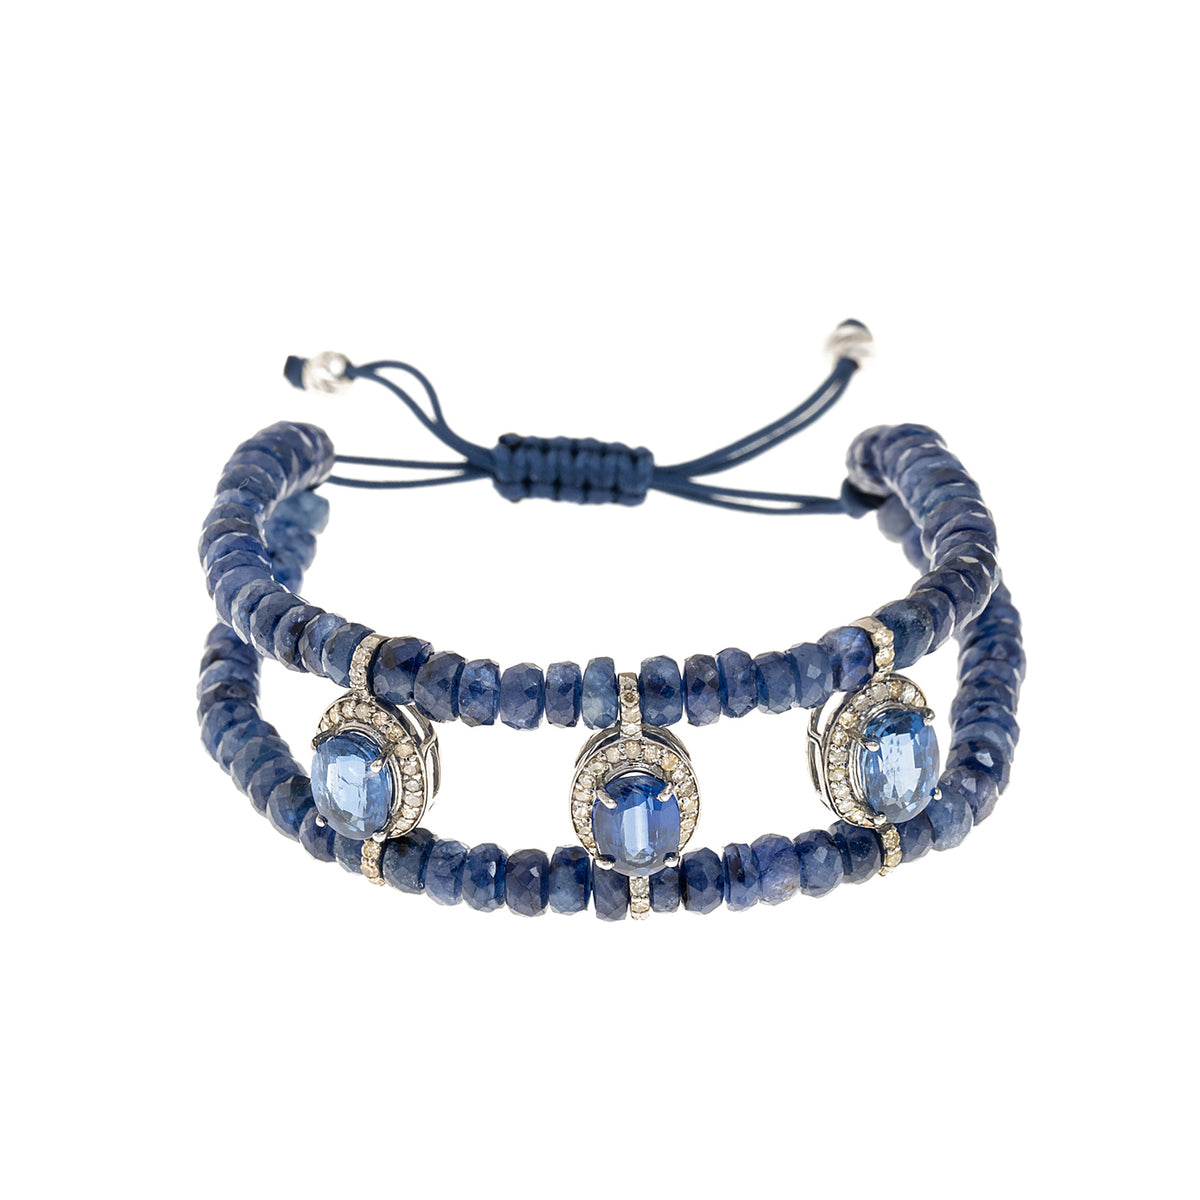 Gold and diamond chain bracelet. Sapphire bracelet. Blue Sapphire bracelet. Diamond and sapphire bracelet. Anatol jewellery. Fine jewellery. Χρυσά κοσμήματα. Χρυσό βραχιόλι. Βραχιόλι με μπριγιάν. Βραχιόλι με ζαφείρι. Βραχιόλι με διαμάντια και ζαφείρια.